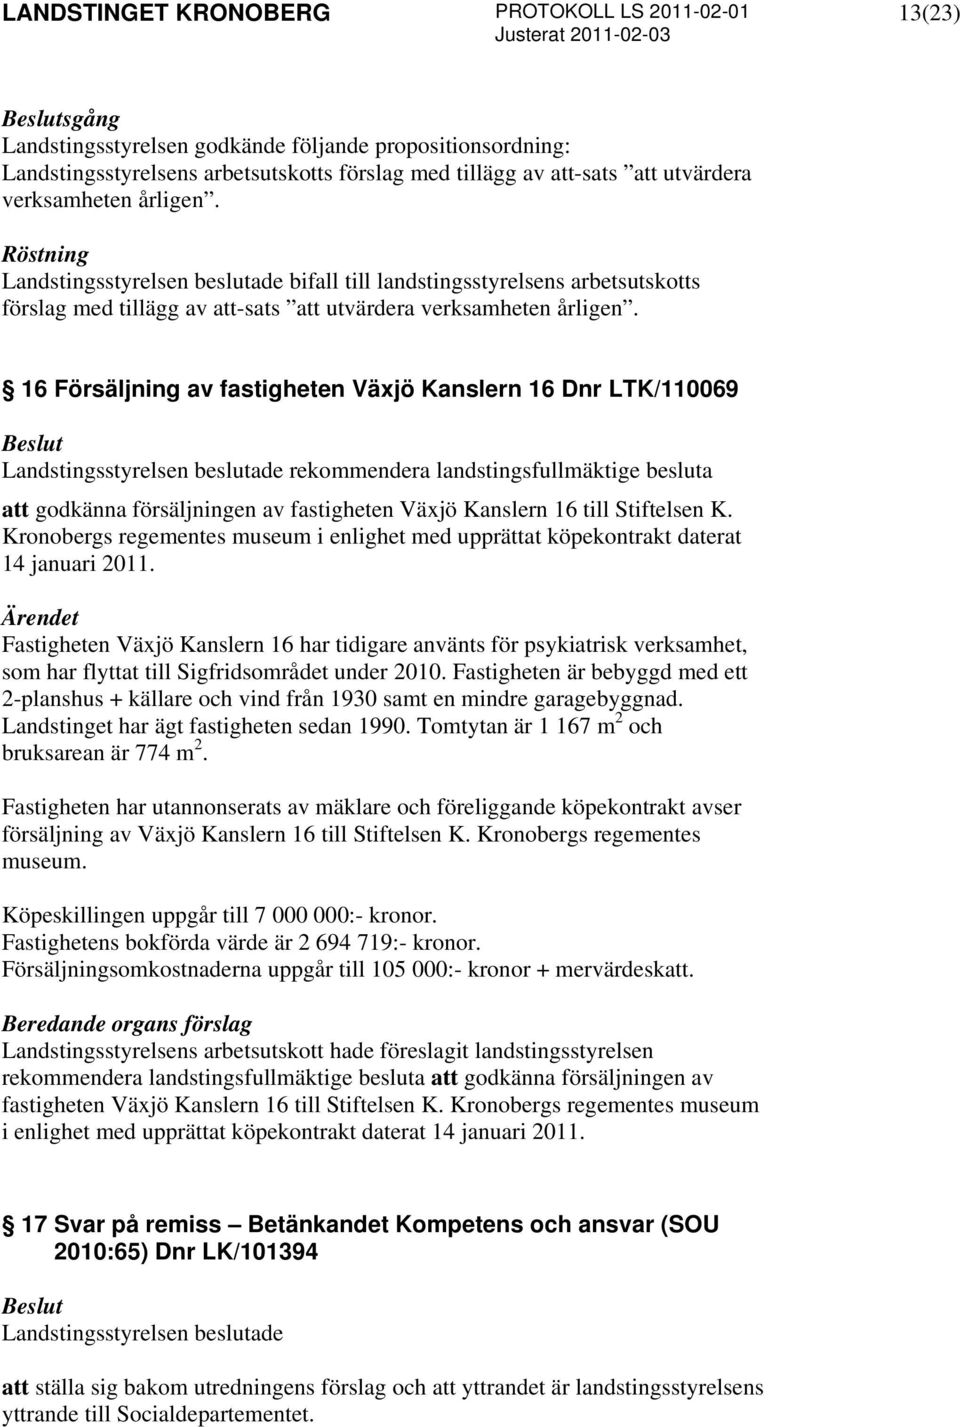 16 Försäljning av fastigheten Växjö Kanslern 16 Dnr LTK/110069 rekommendera landstingsfullmäktige besluta att godkänna försäljningen av fastigheten Växjö Kanslern 16 till Stiftelsen K.